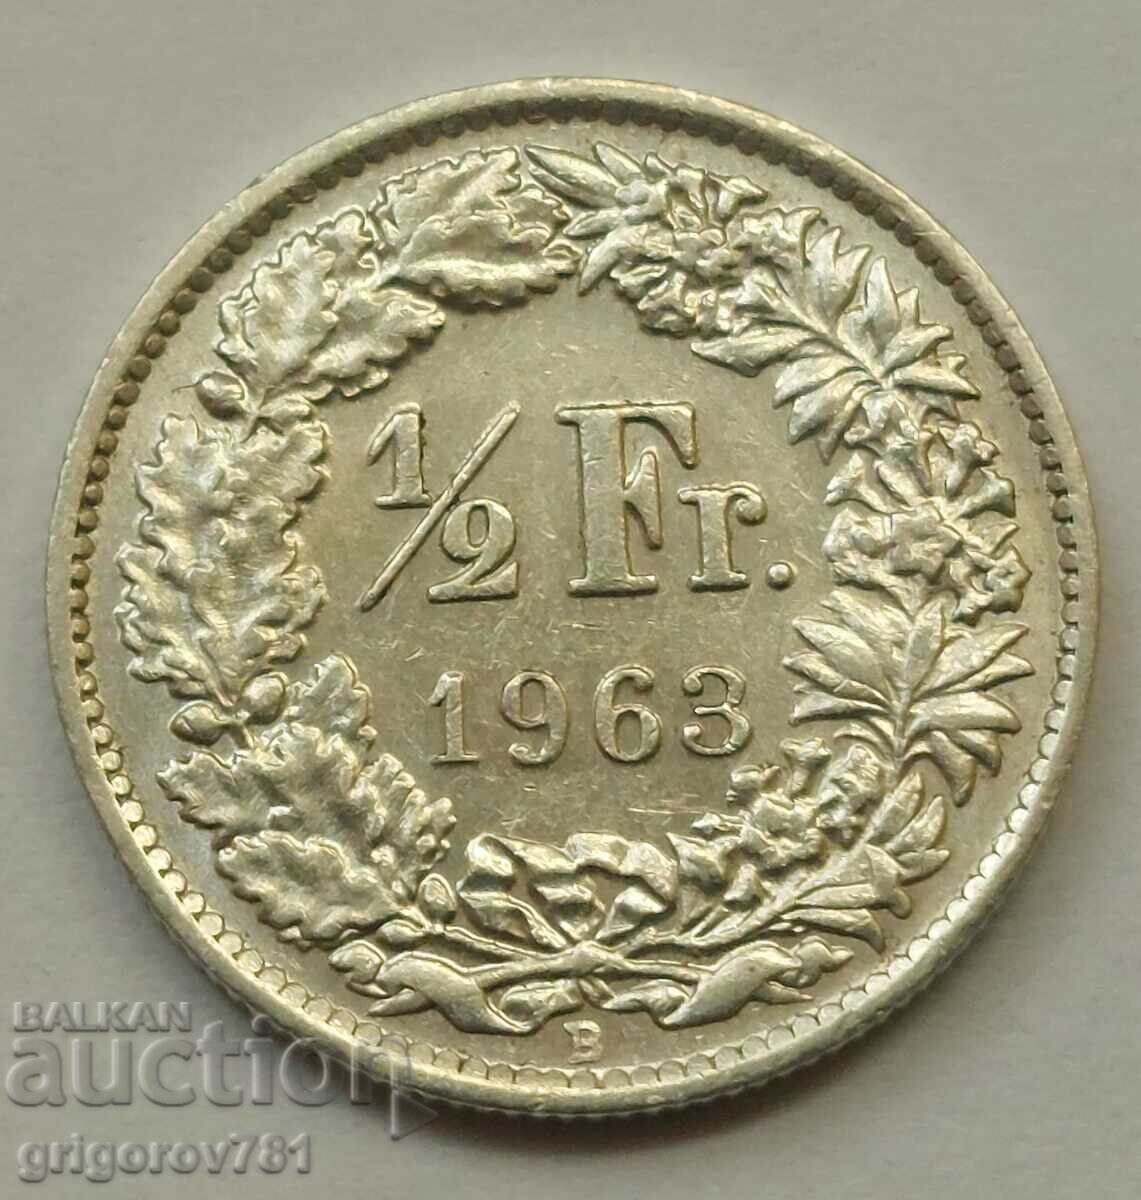 1/2 Φράγκο Ασήμι Ελβετία 1963 Β - Ασημένιο νόμισμα #134